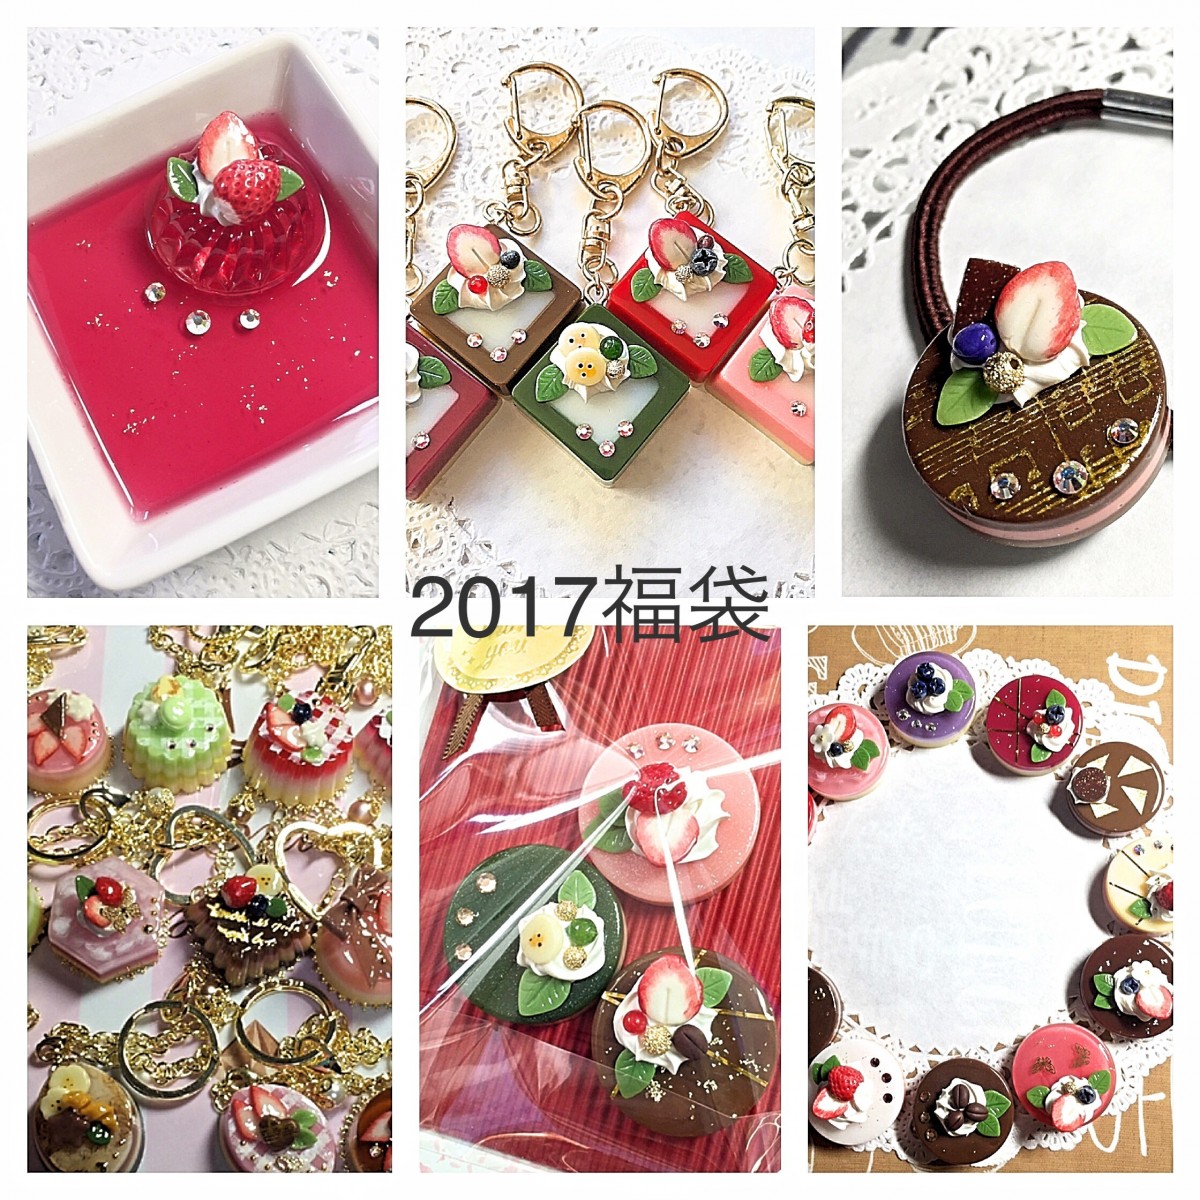 17レジンケーキ福袋 Iichi ハンドメイド クラフト作品 手仕事品の通販